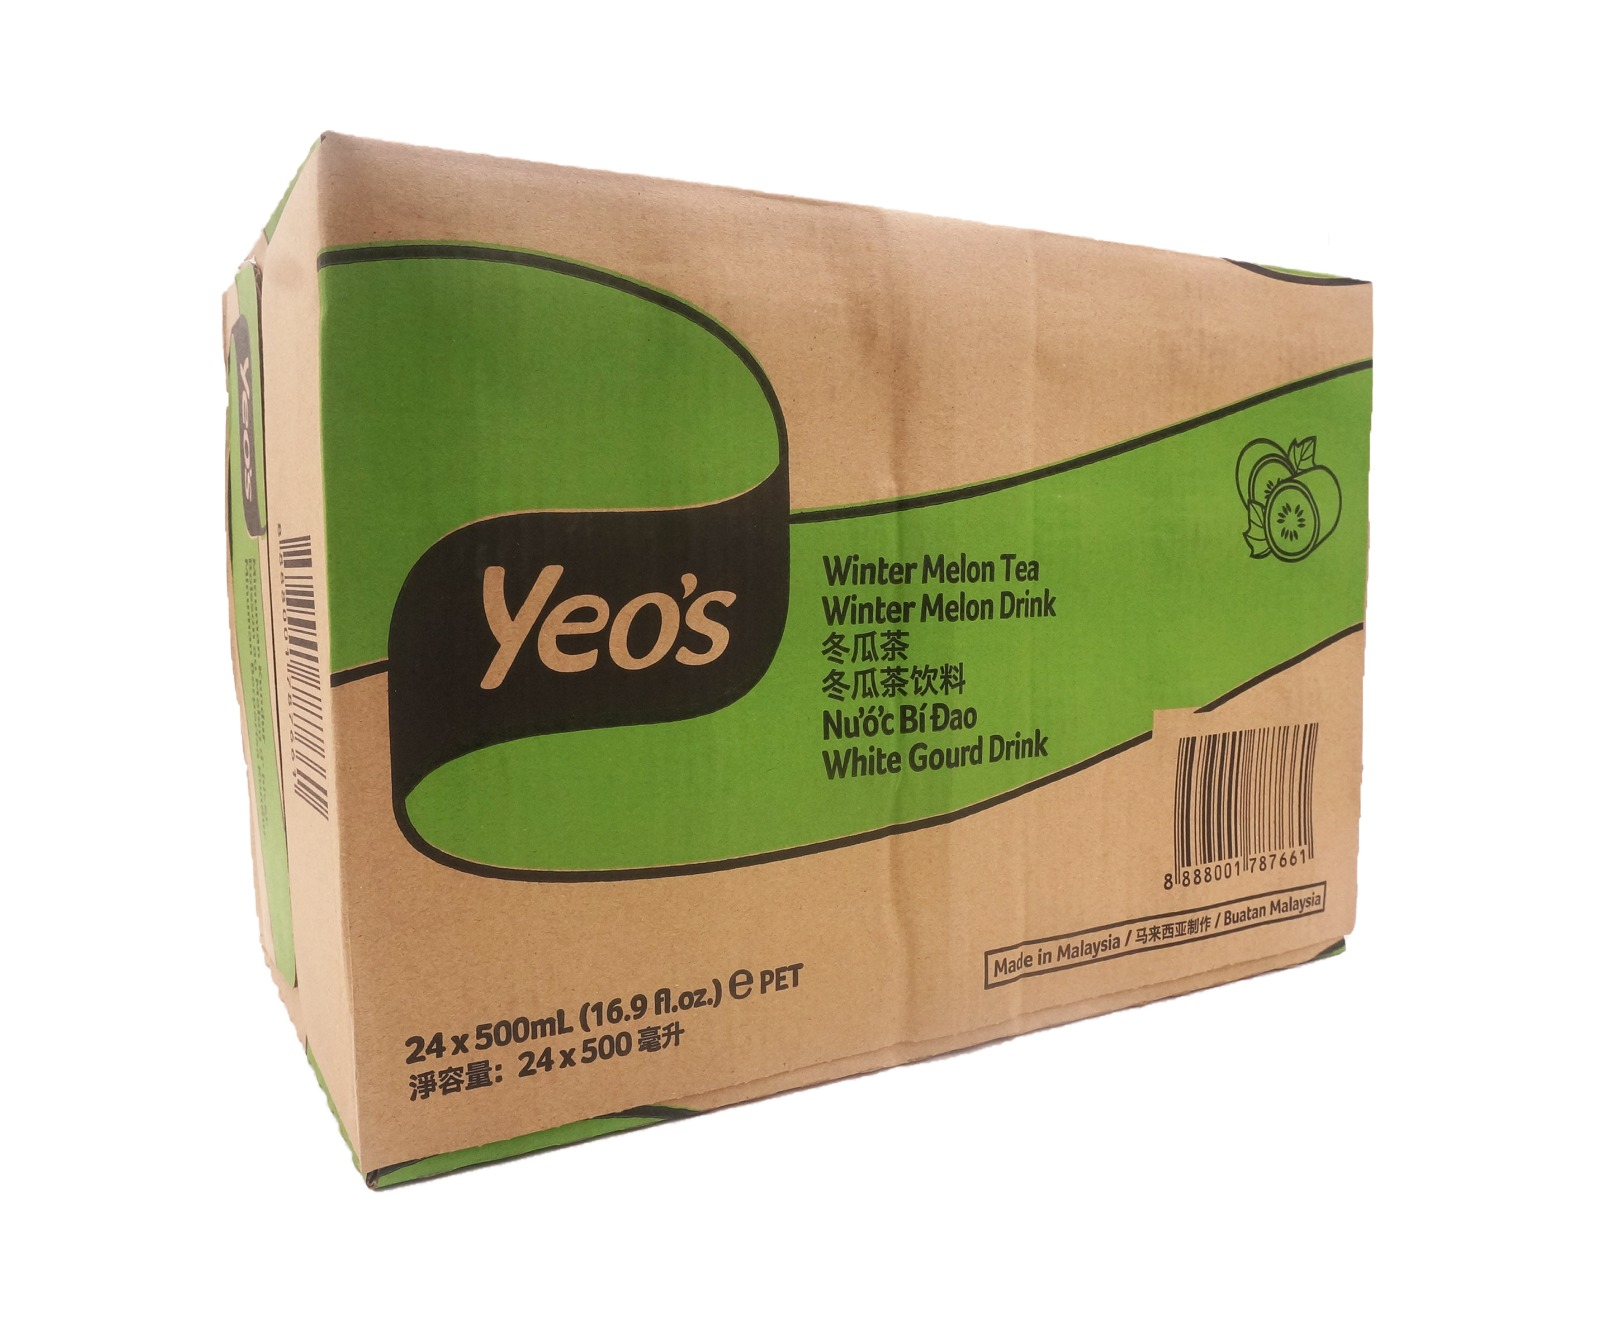 Yeos Winter Melon Tea Bottle (24 x 500ml - Carton)